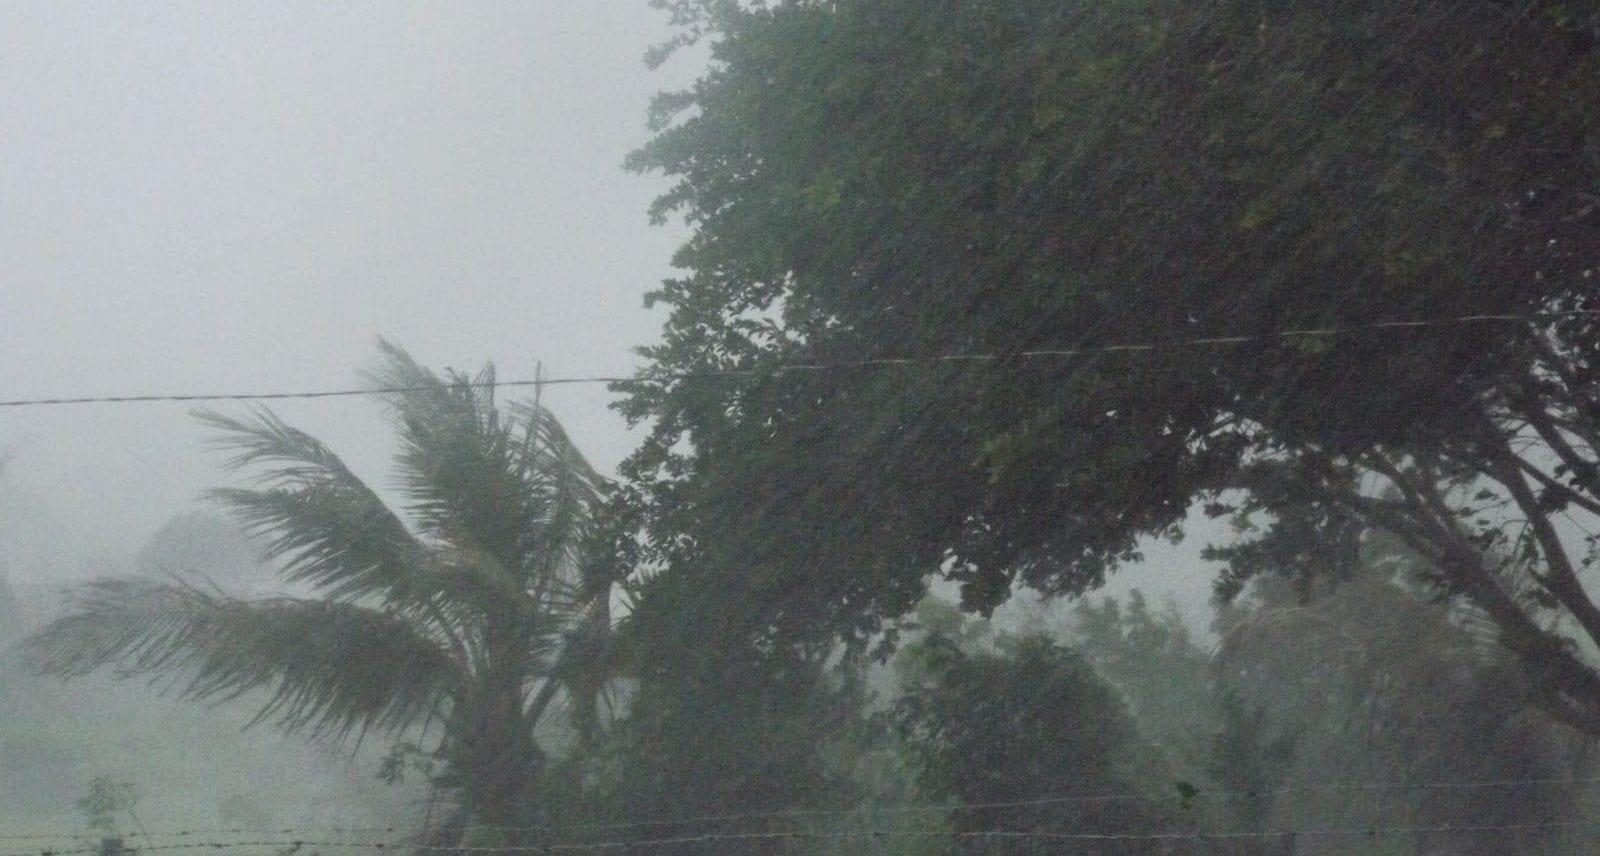 Fim de semana começa com chuvas intensas em Goiás, alerta Inmet